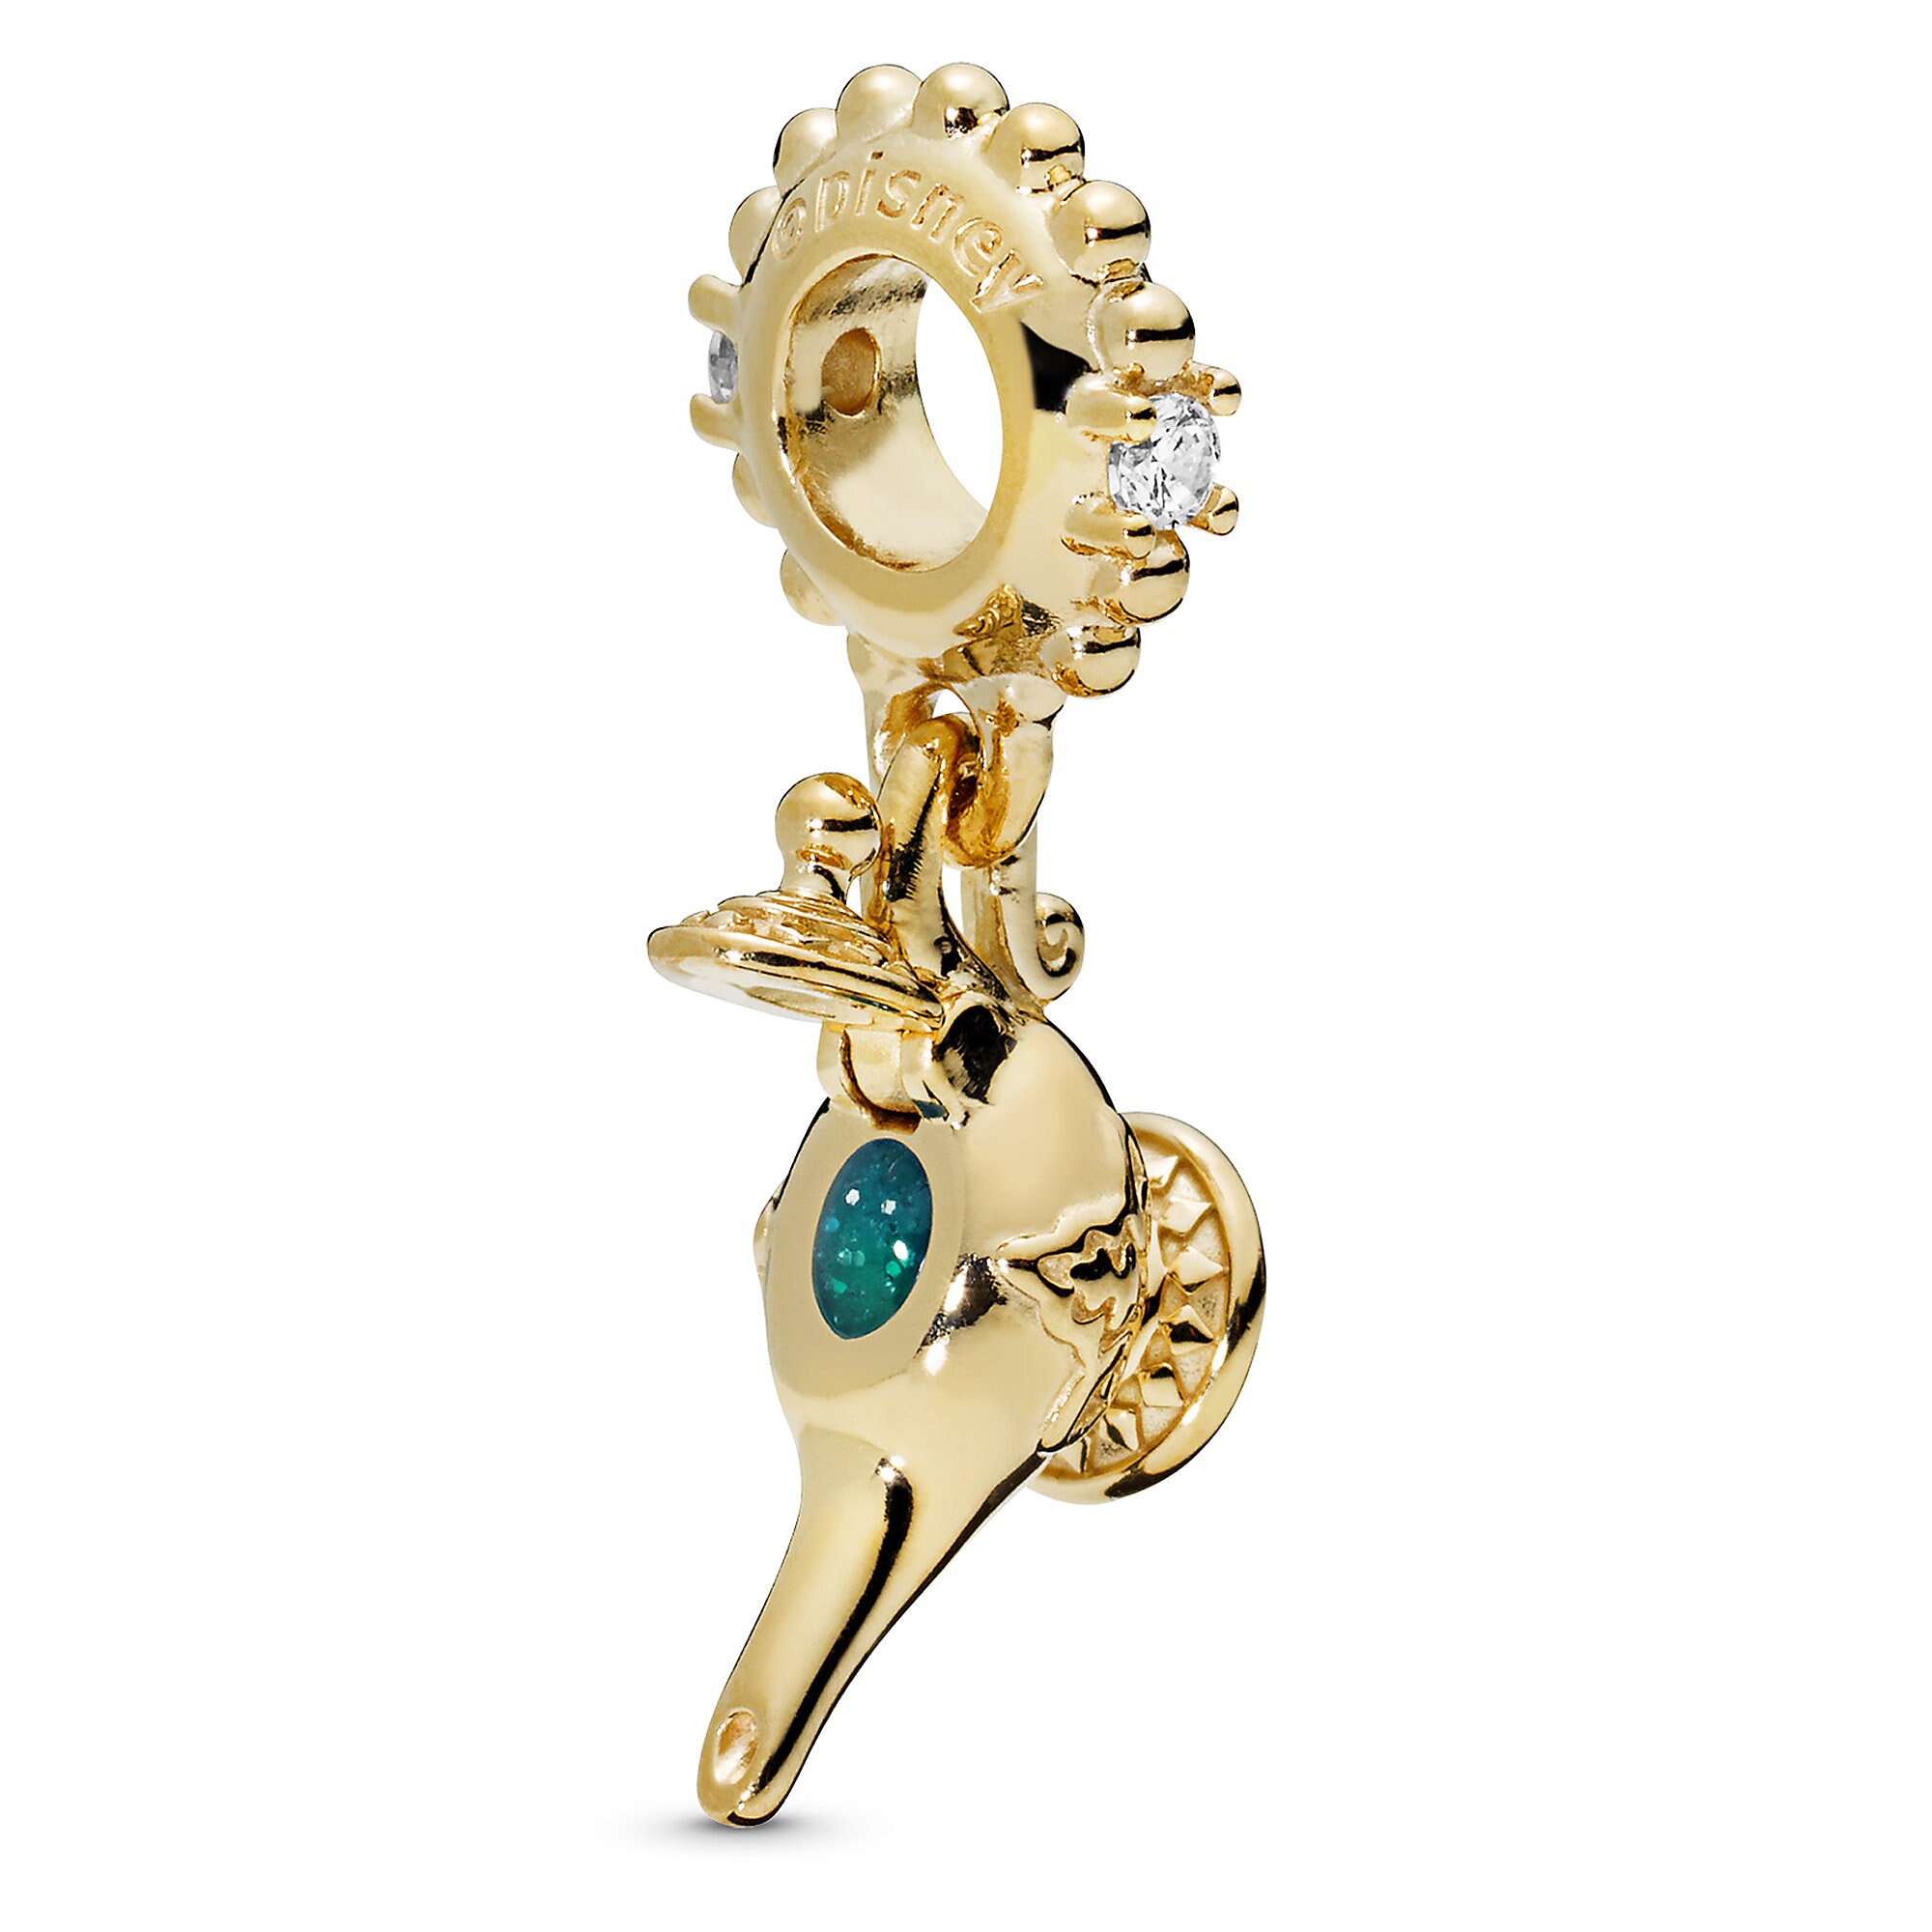 Genie Lamp Charm by Pandora Jewelry - Aladdin